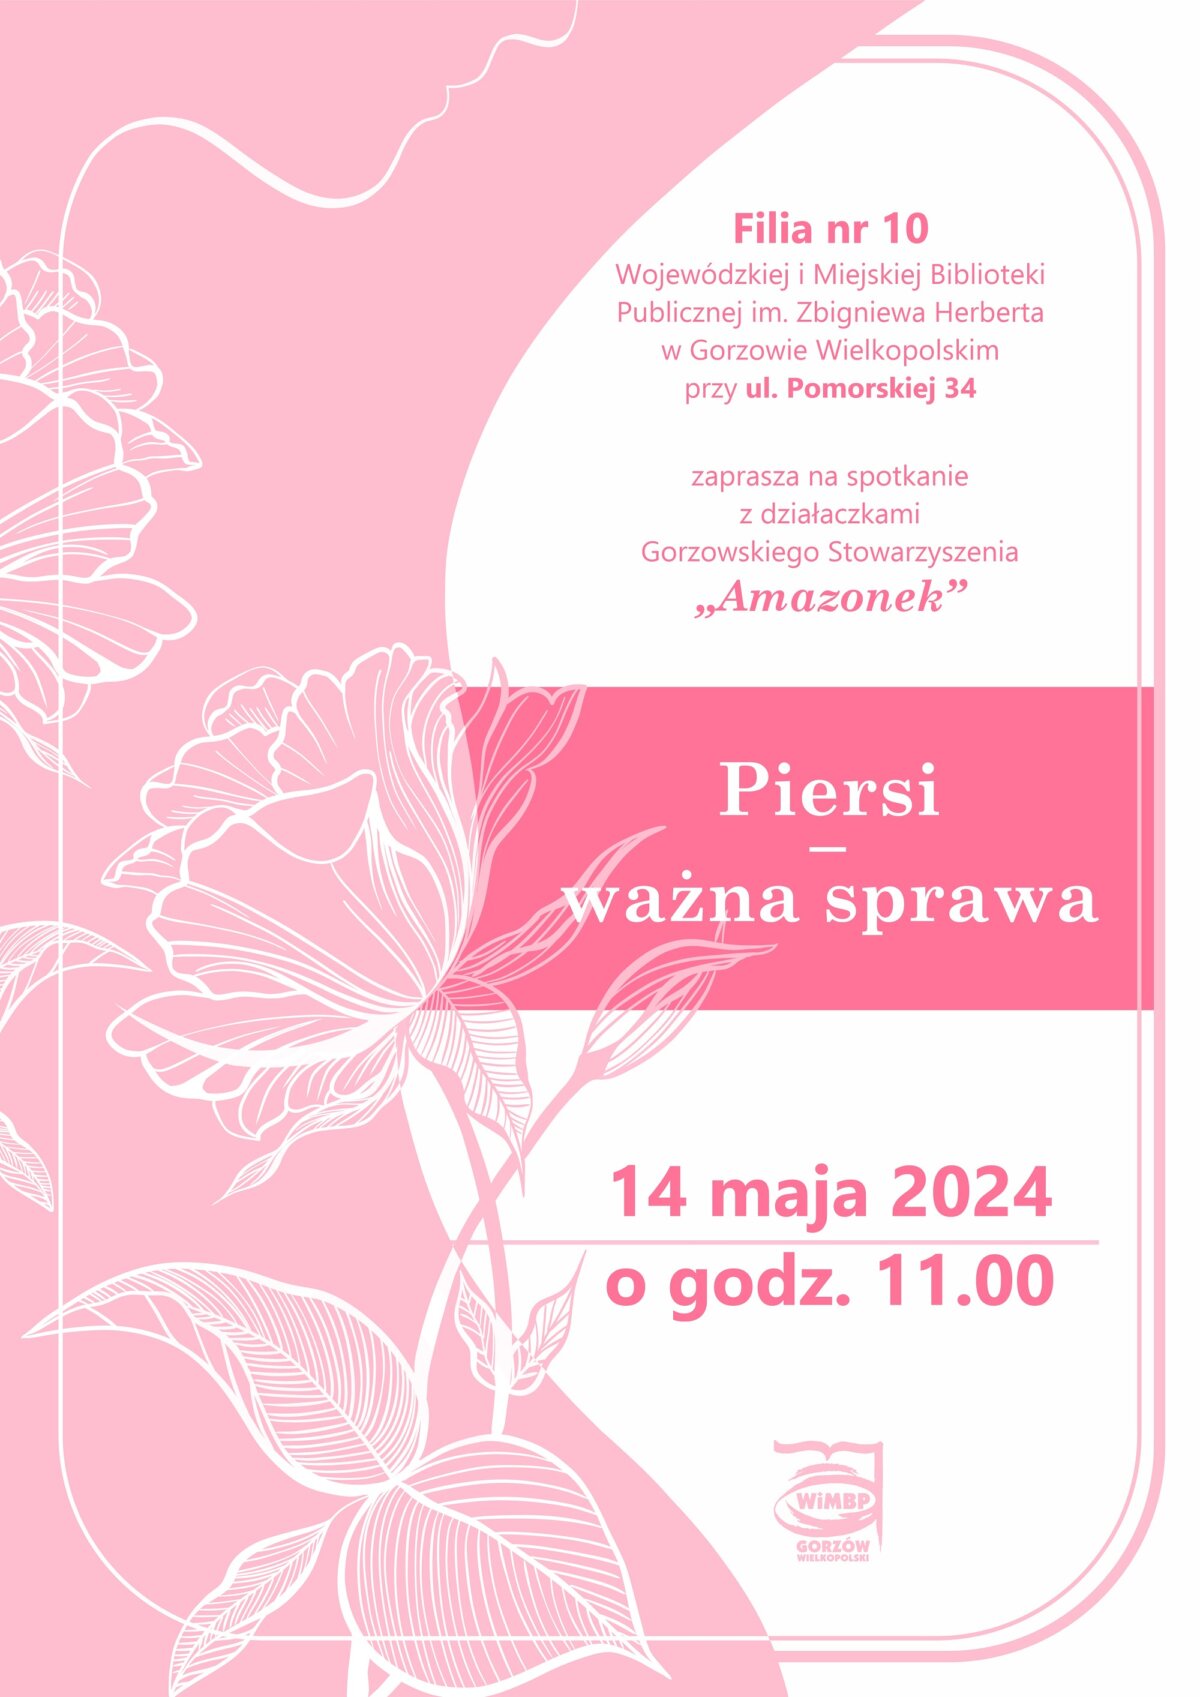 Plakat promujący wydarzenie w kolorystyce różowo-białej z zarysem kwiatów.